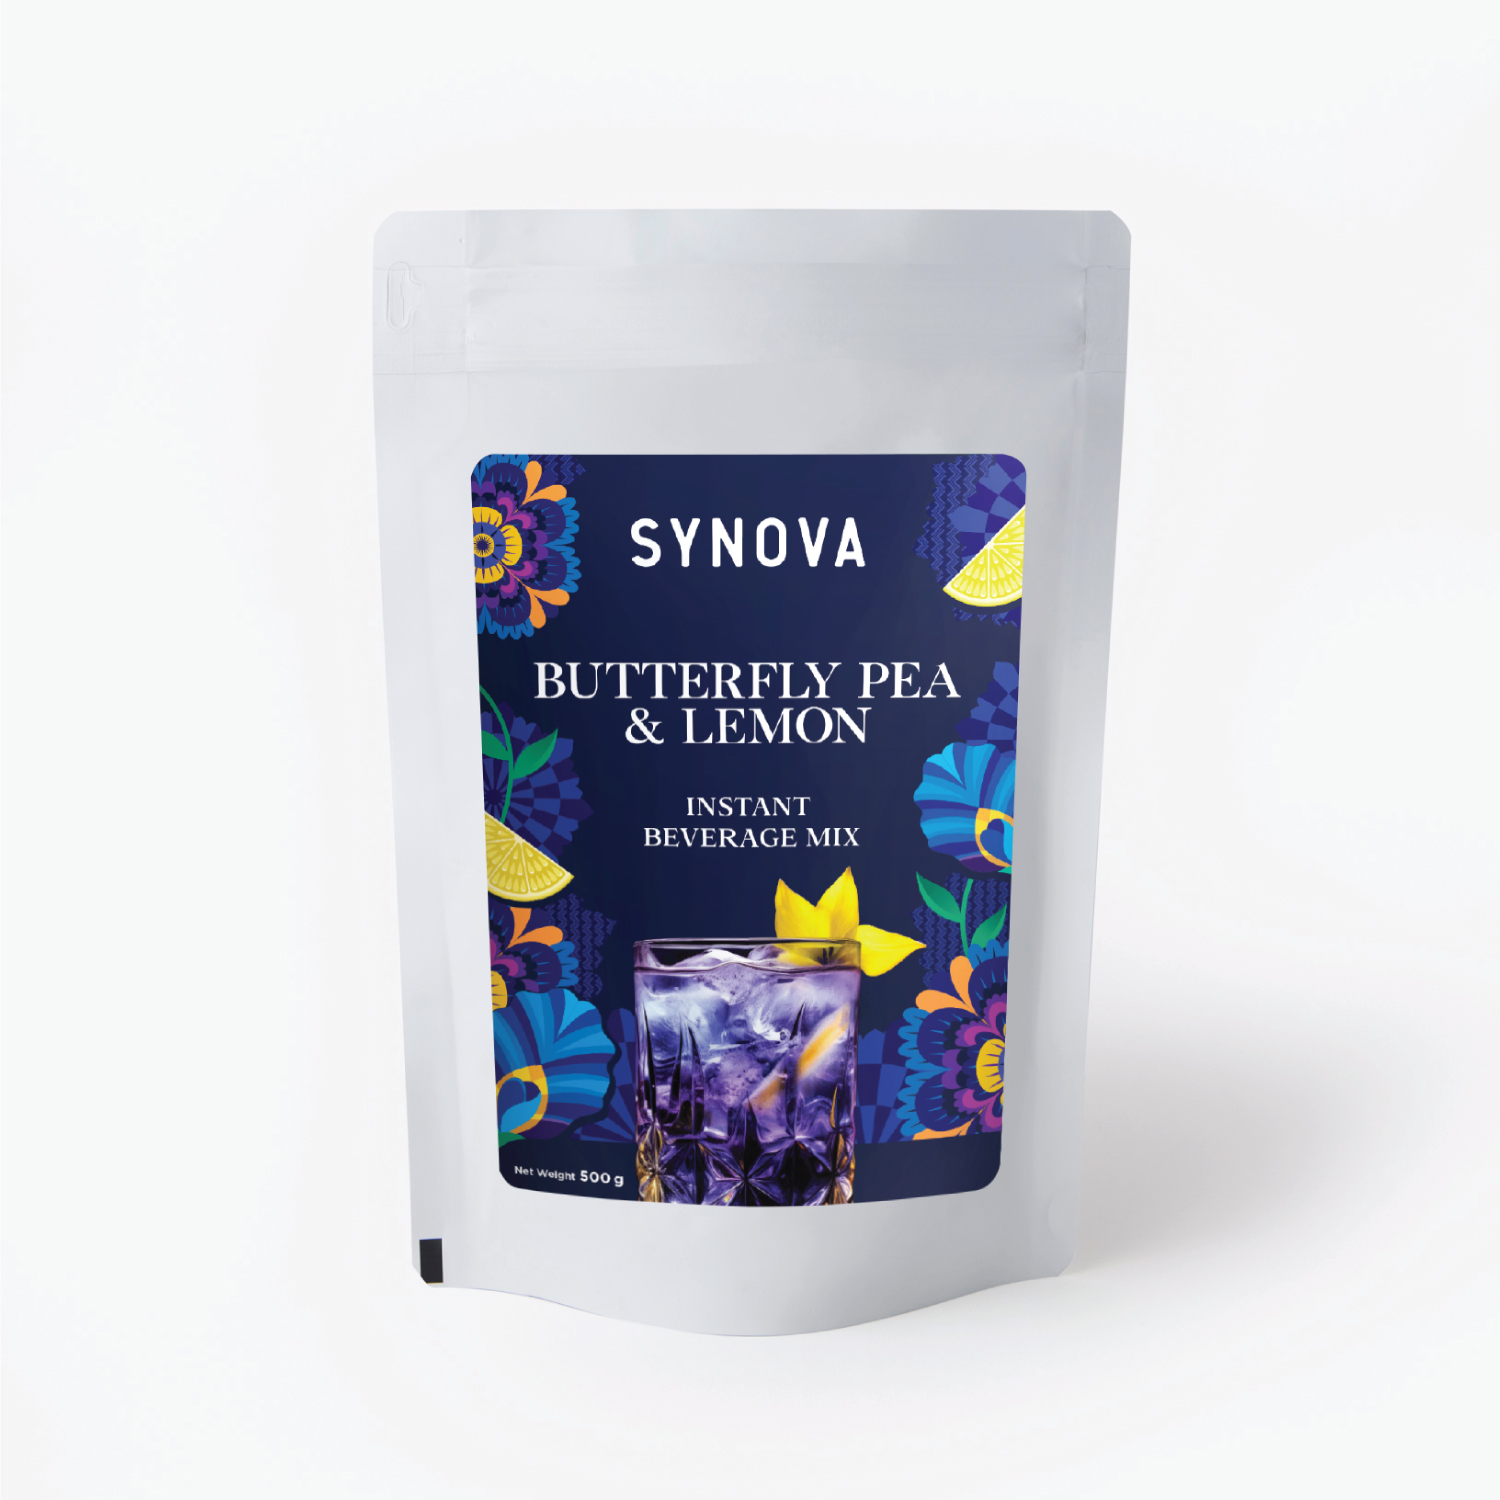 SYNOVA Butterfly Pea & Lemon Drink Premix (Box)